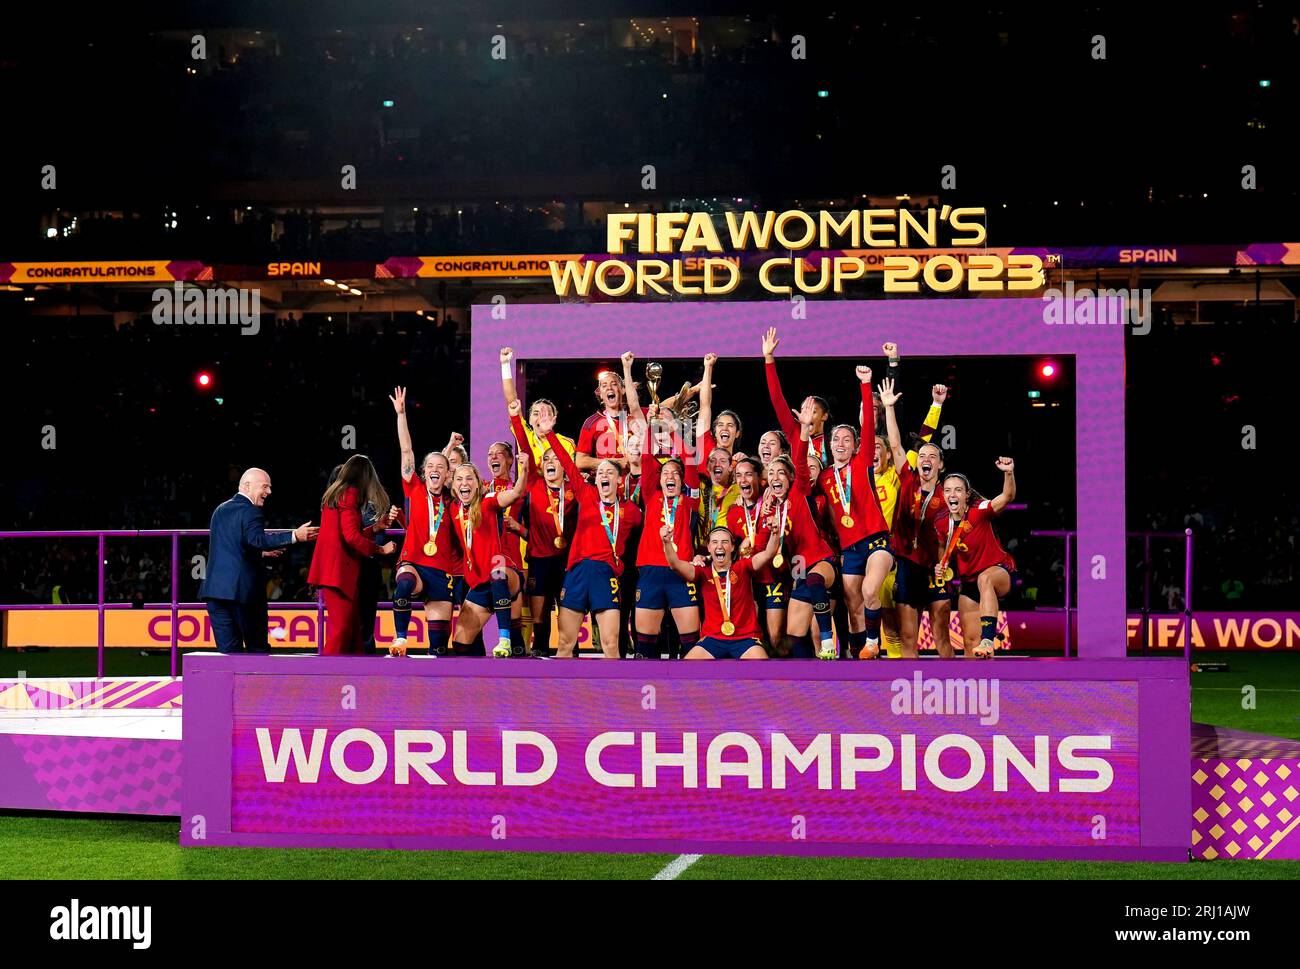 Spaniens Spieler feiern den Gewinn des Endspiels der FIFA Frauen-Weltmeisterschaft im Stadion Australien, Sydney. Bilddatum: Sonntag, 20. August 2023. Stockfoto